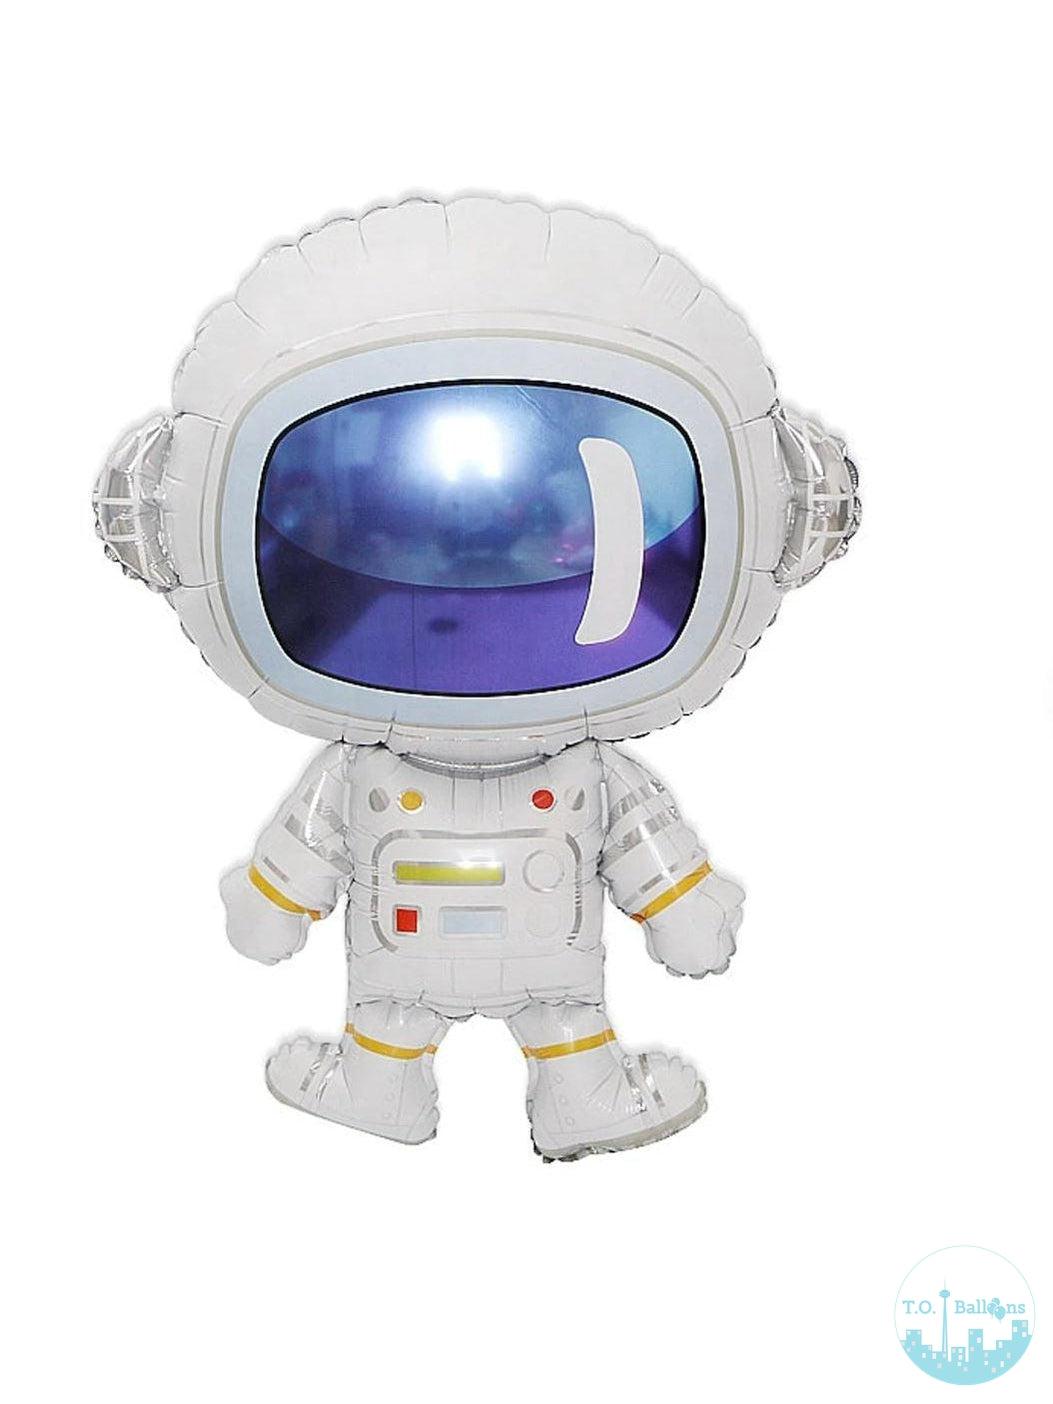 Astronaut (Spaceman) Balloons  T.O. Balloons 